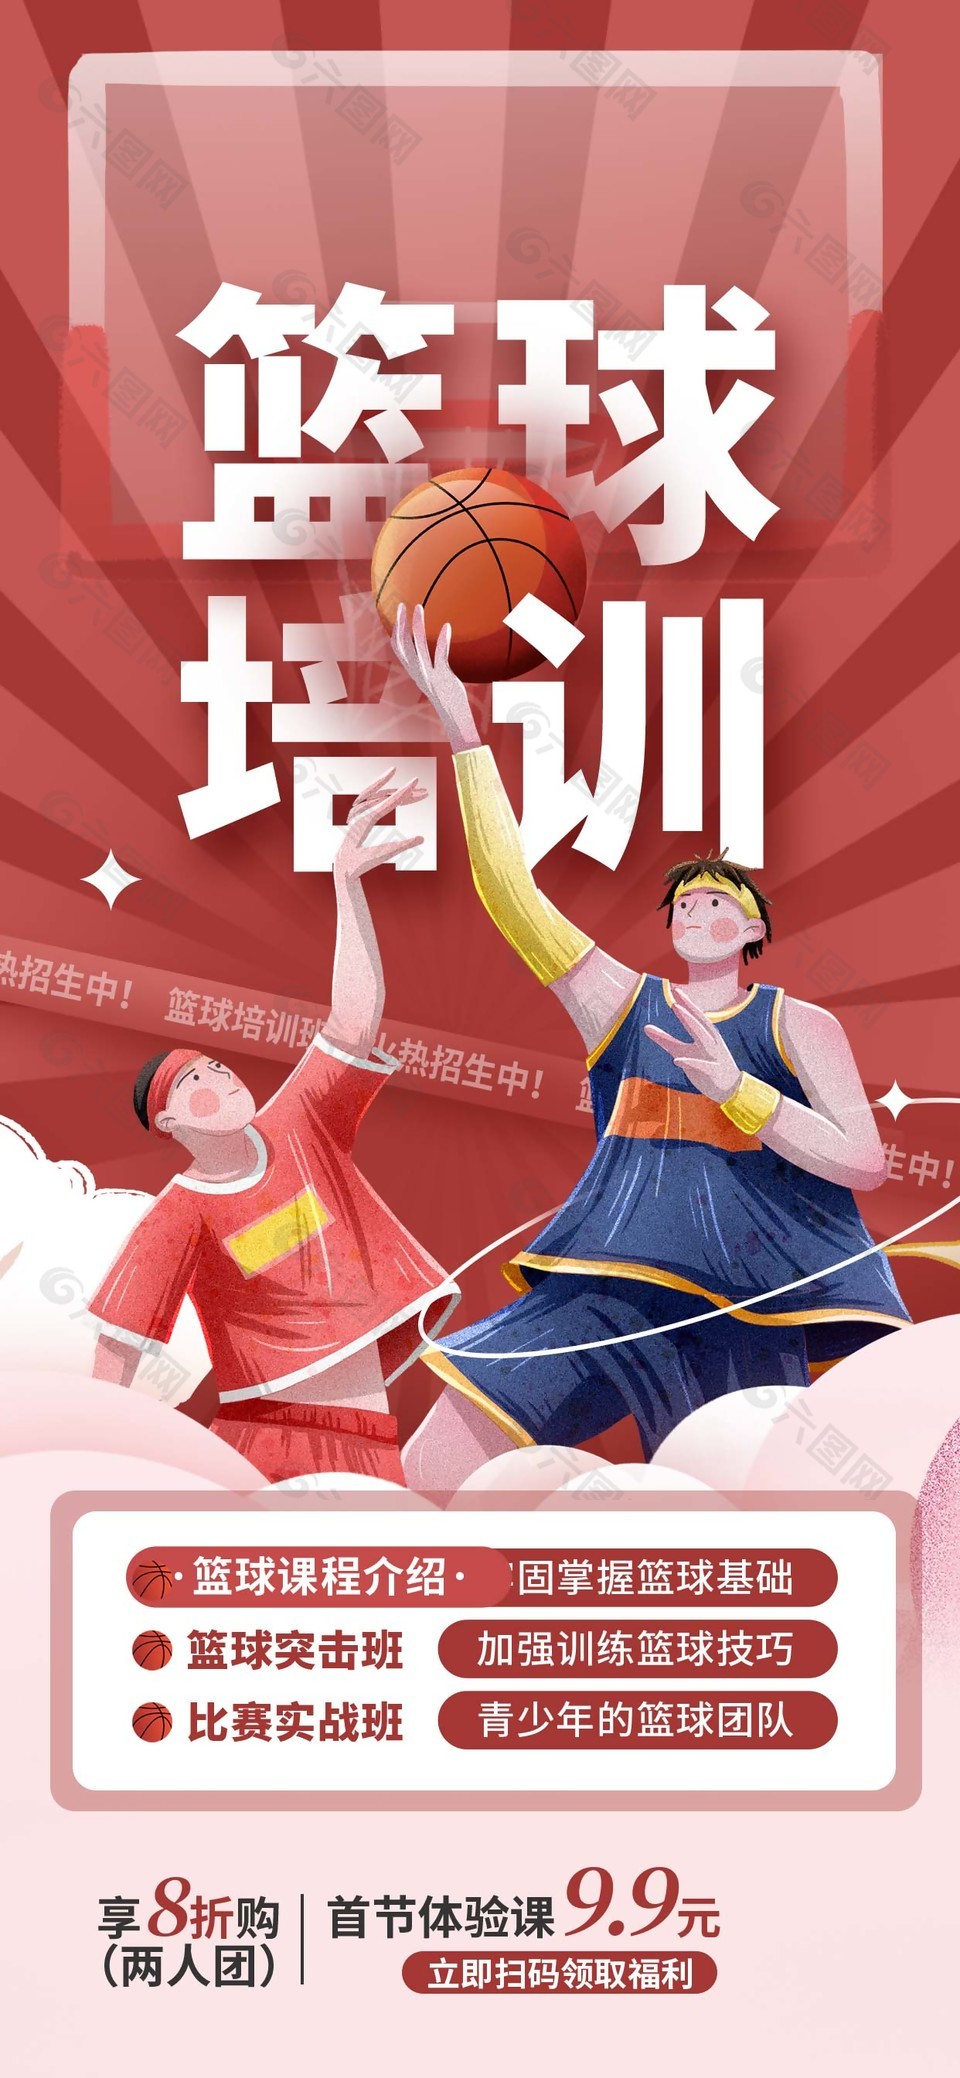 篮球培训班招生活动彩页手机海报设计